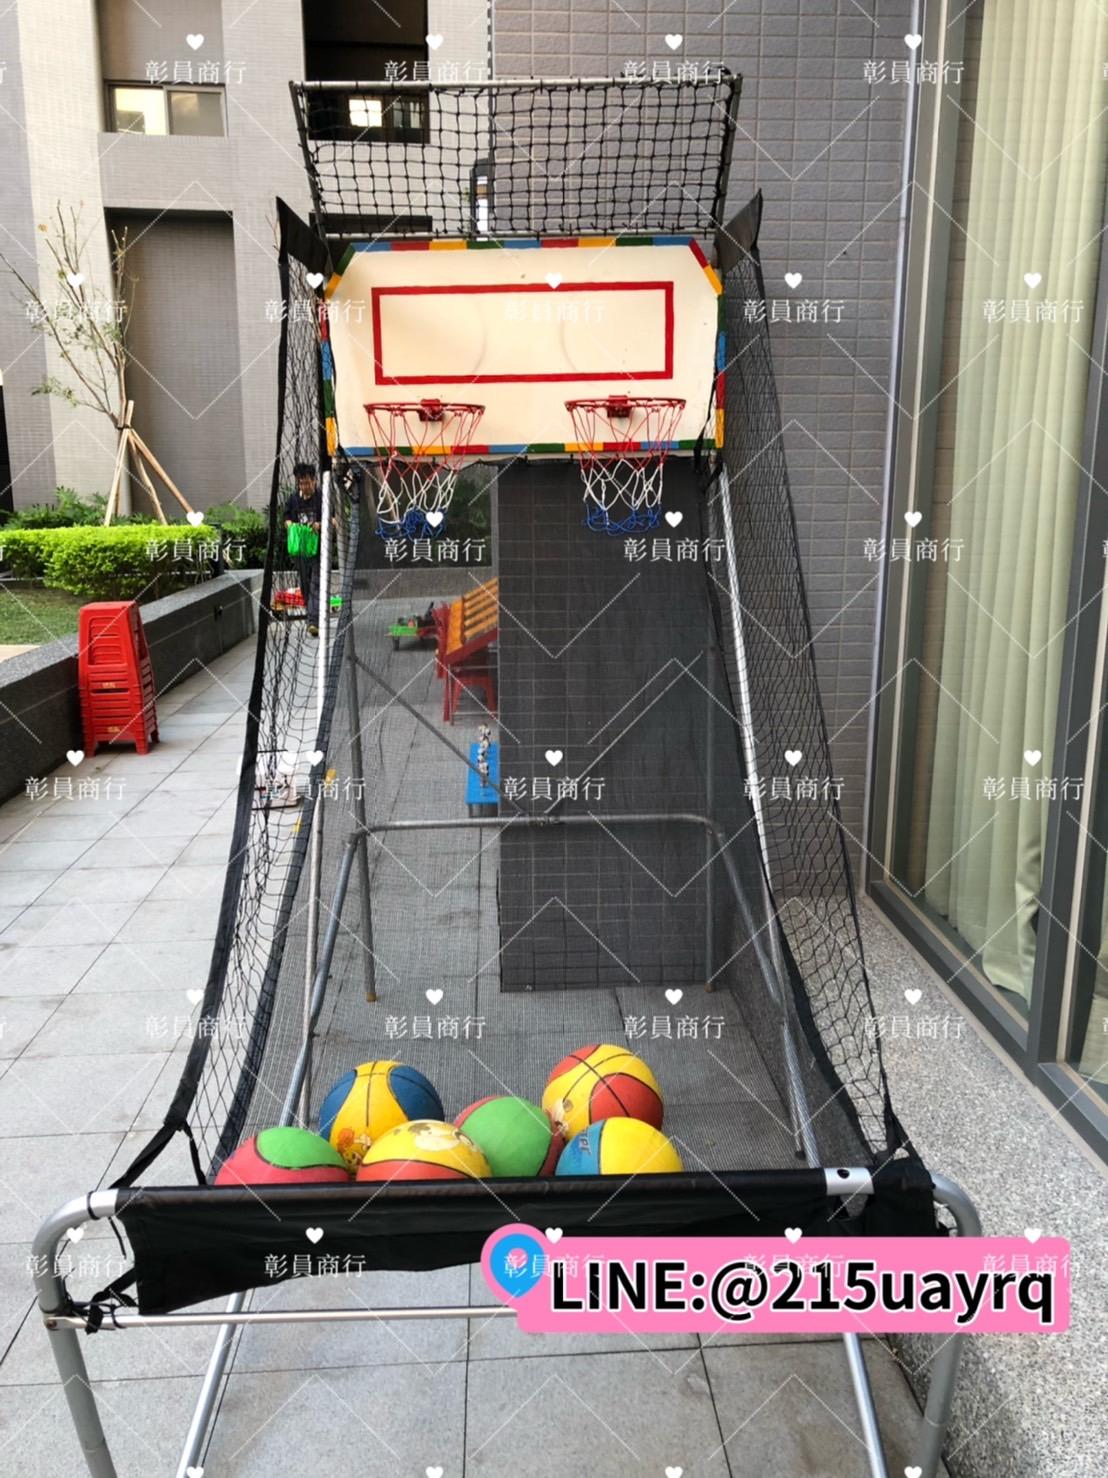 PK雙框籃球機:各式 運動類遊戲機、遊樂場規劃合作、投籃主題器材